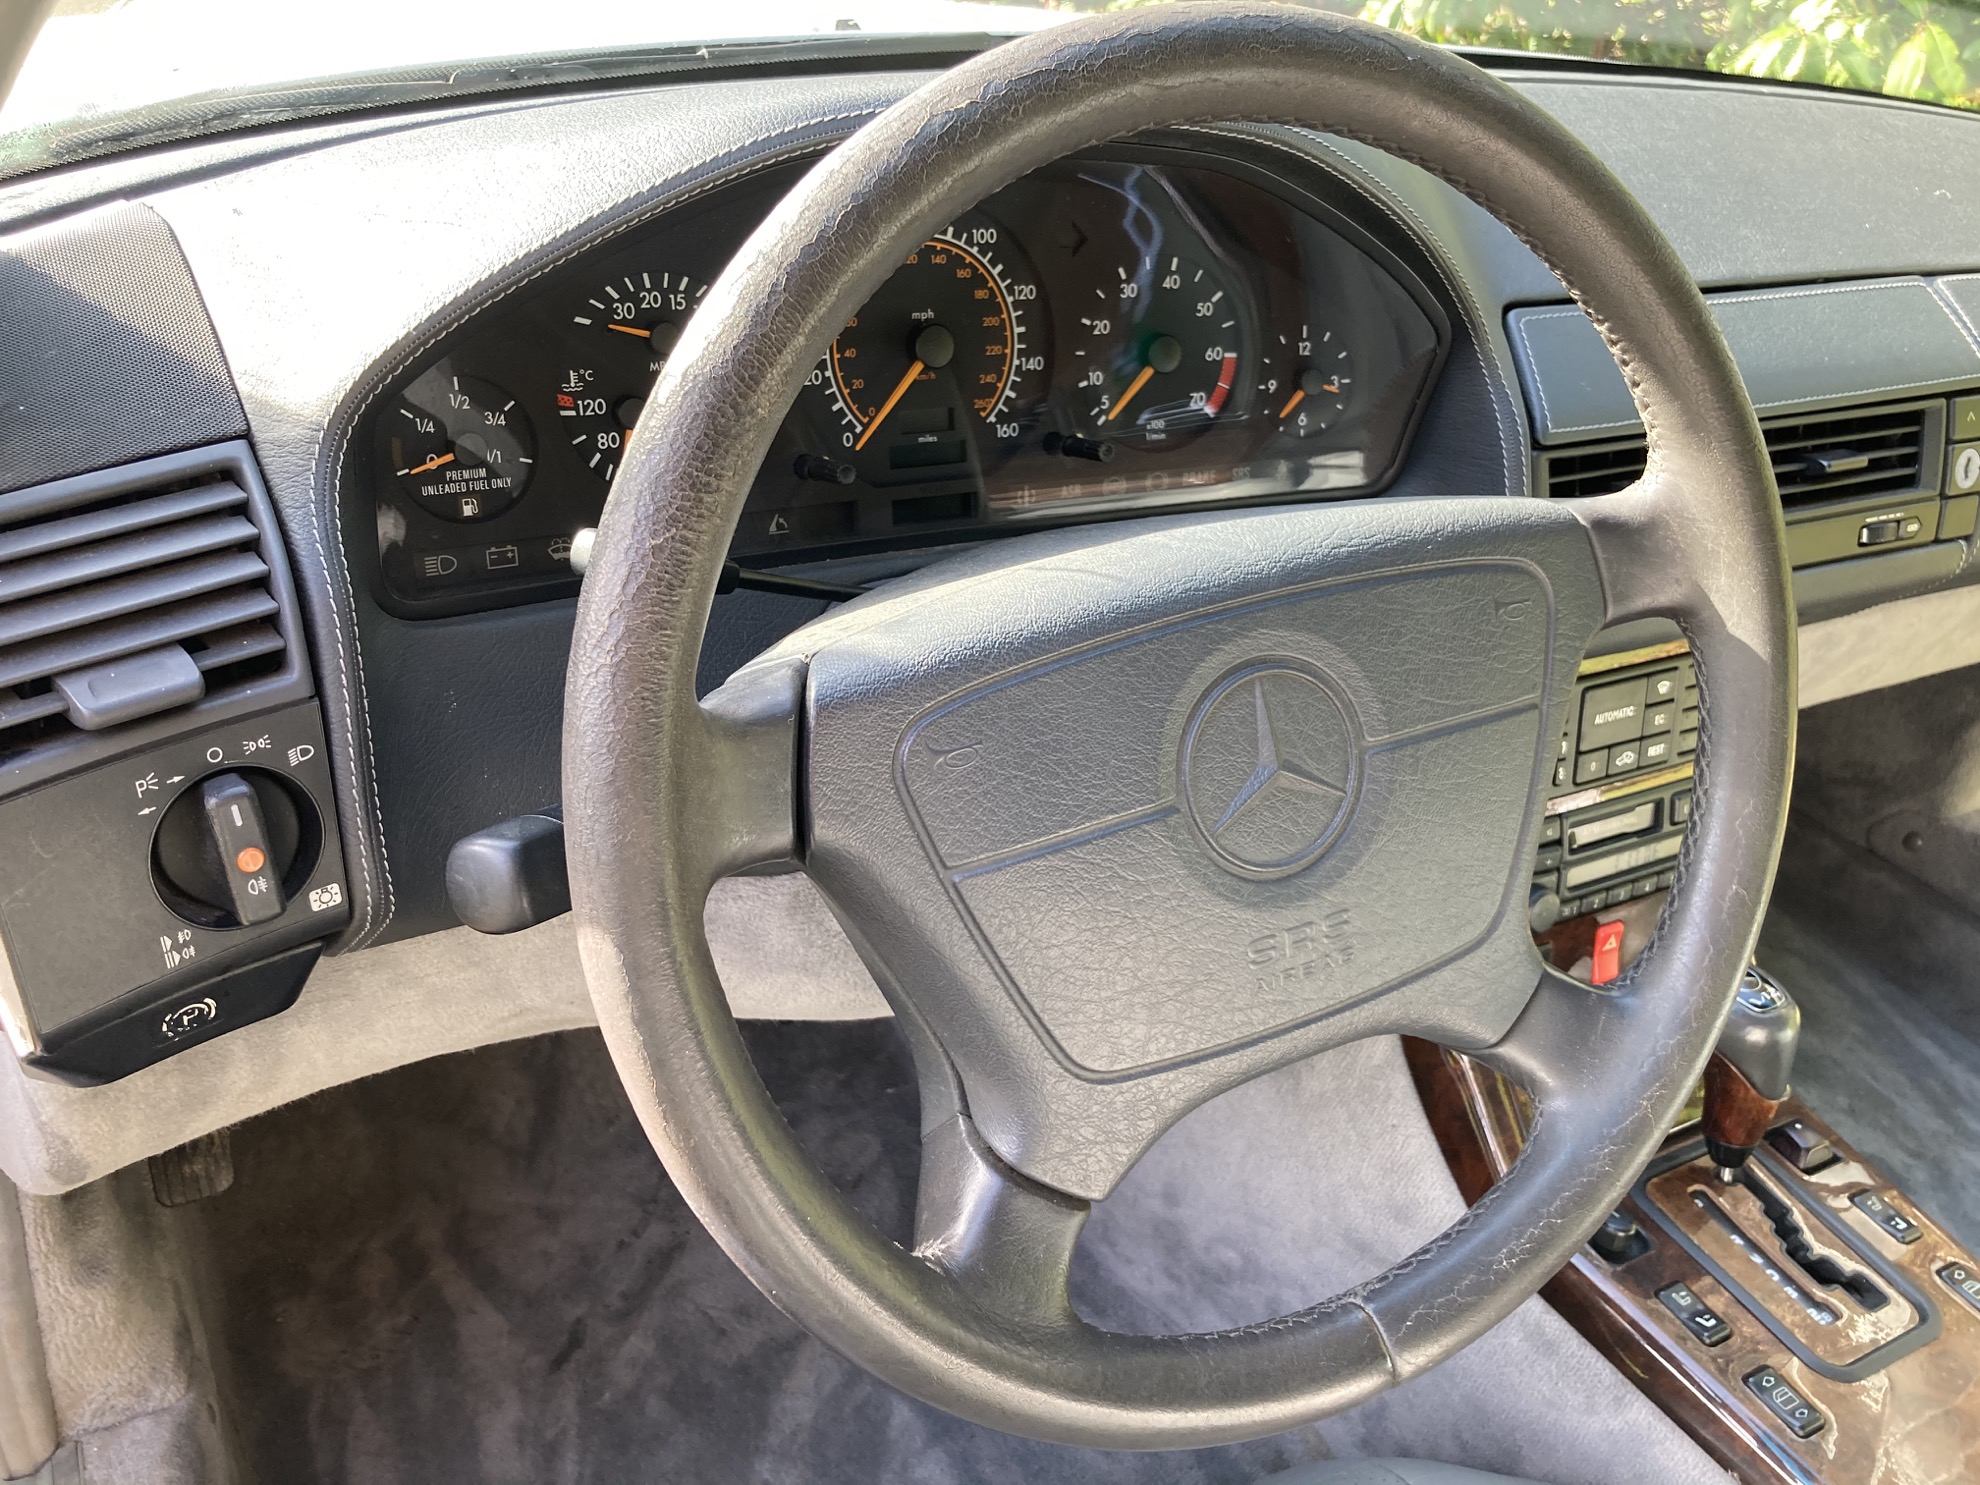 MIWG ForSale 1995 Mercedes SL600